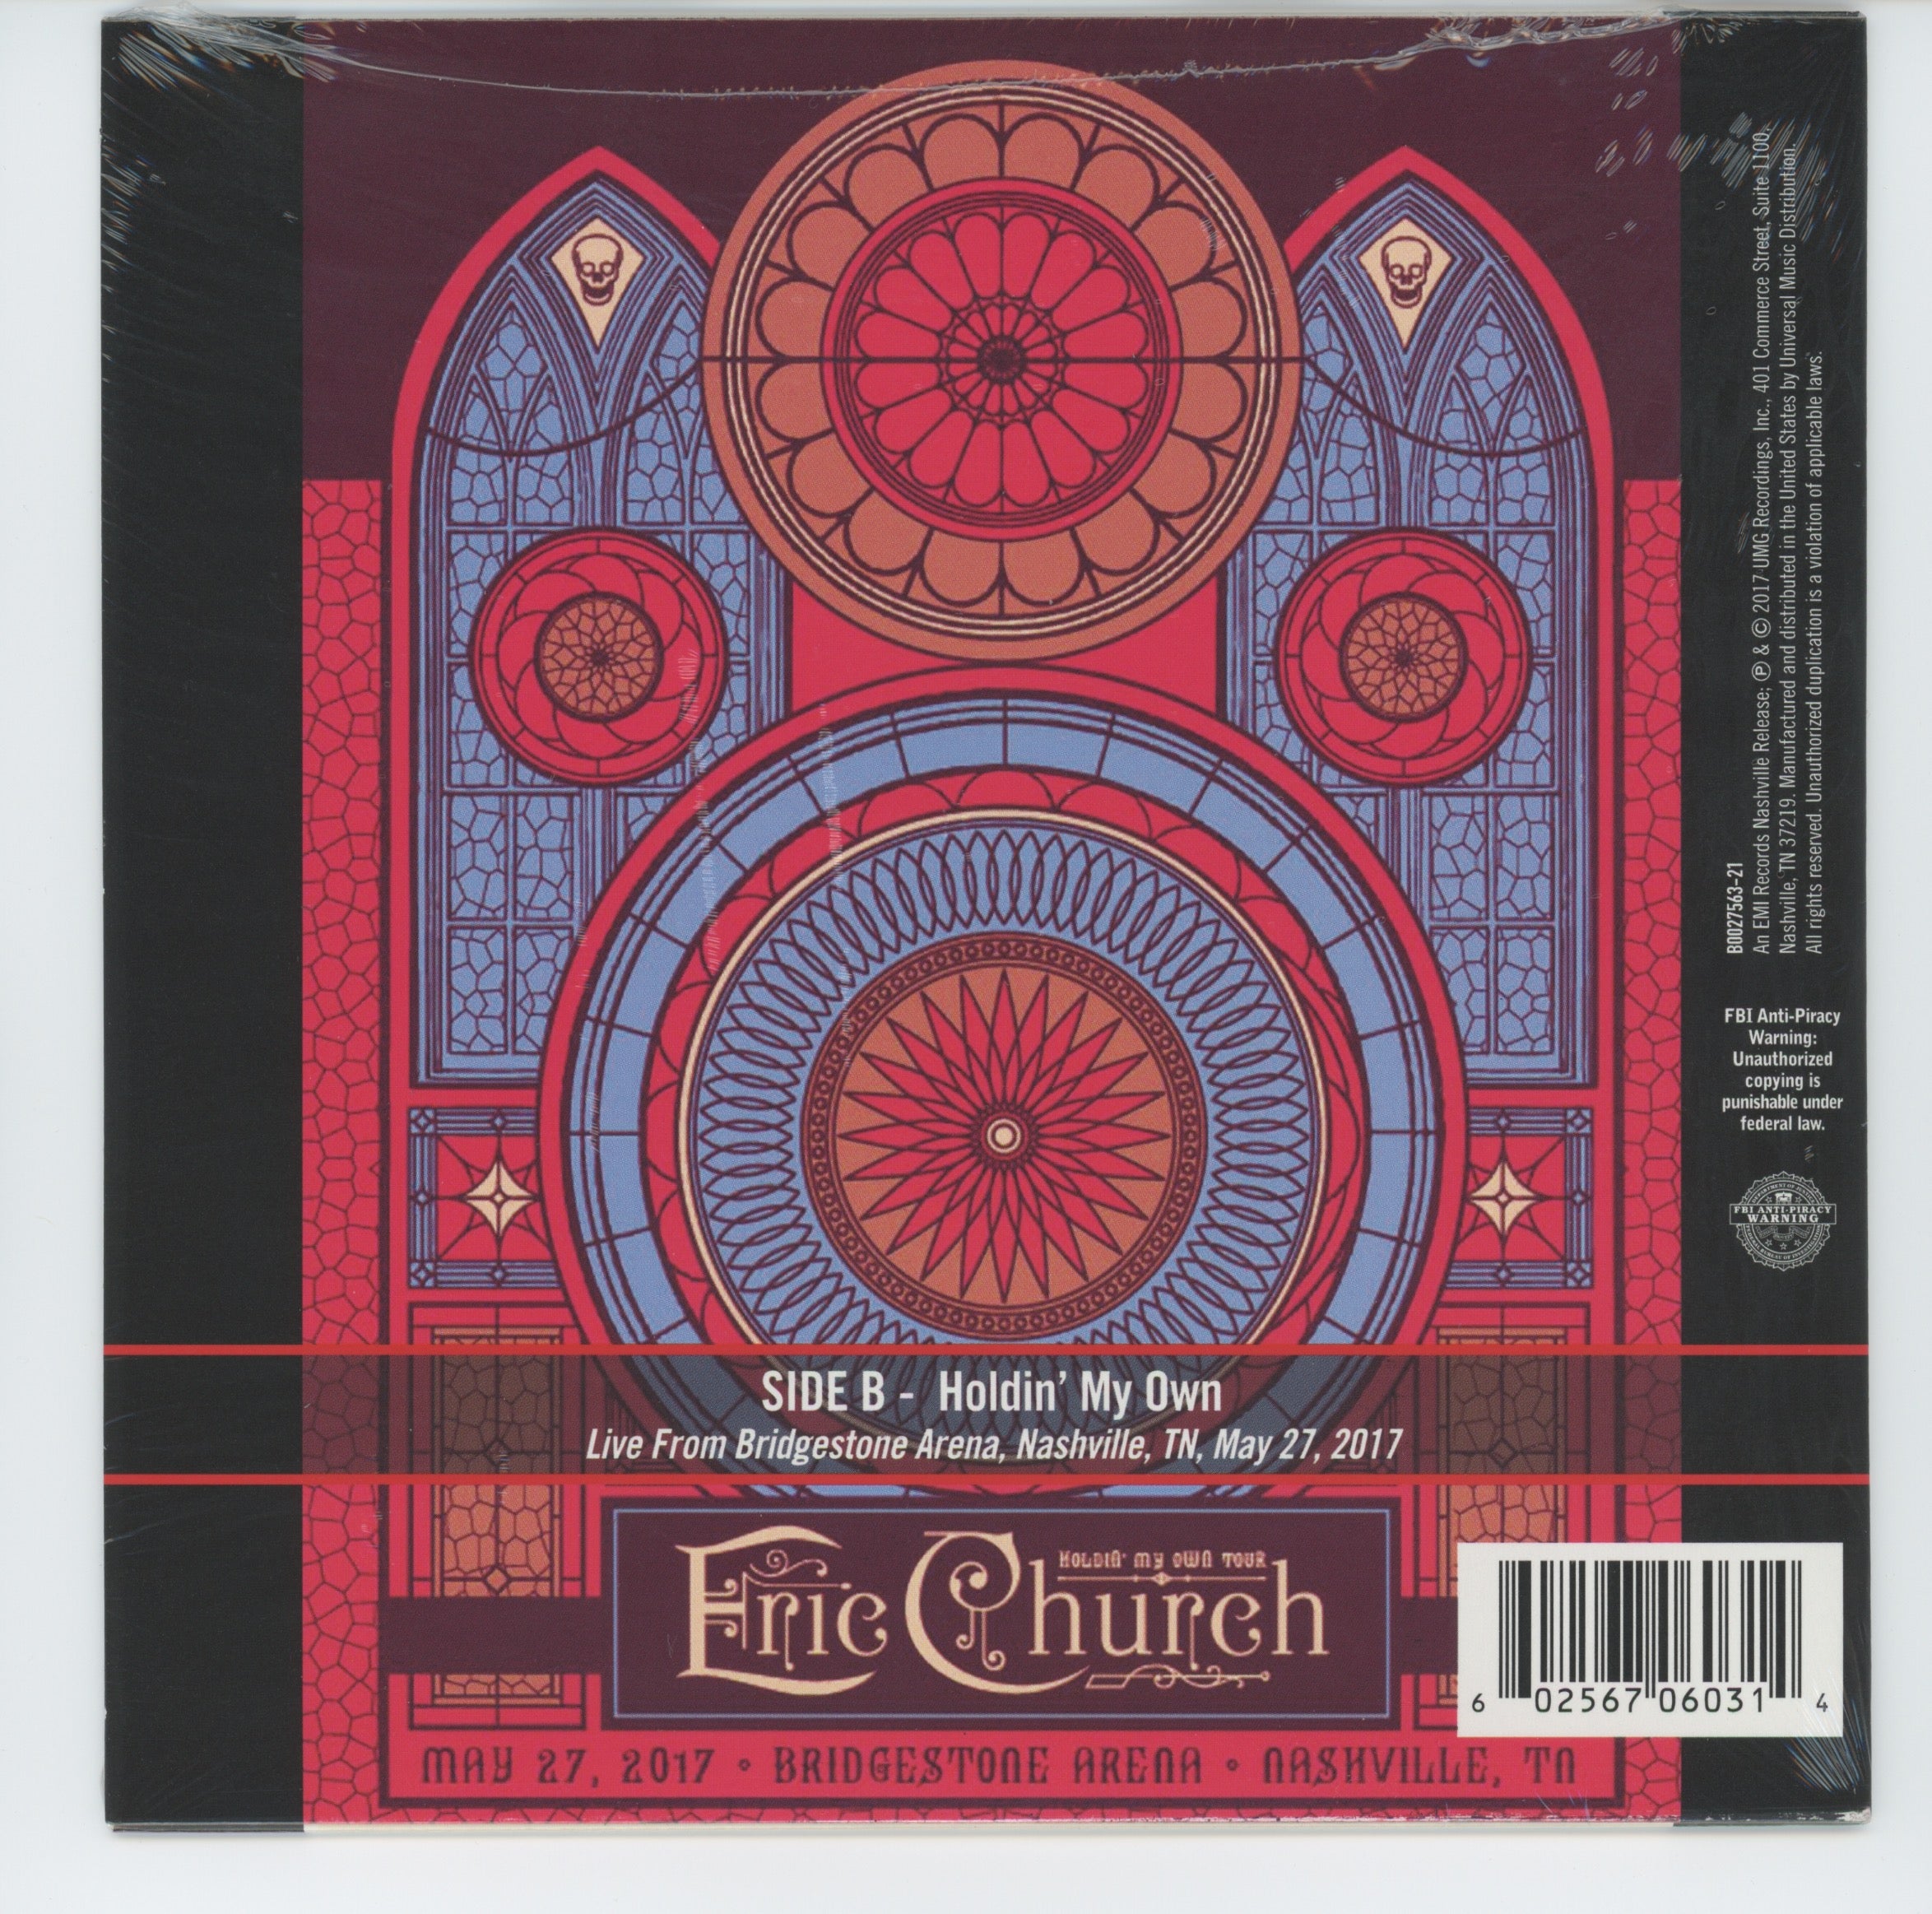 Eric Church - Mistress Named Music on EMI Nashville Sealed